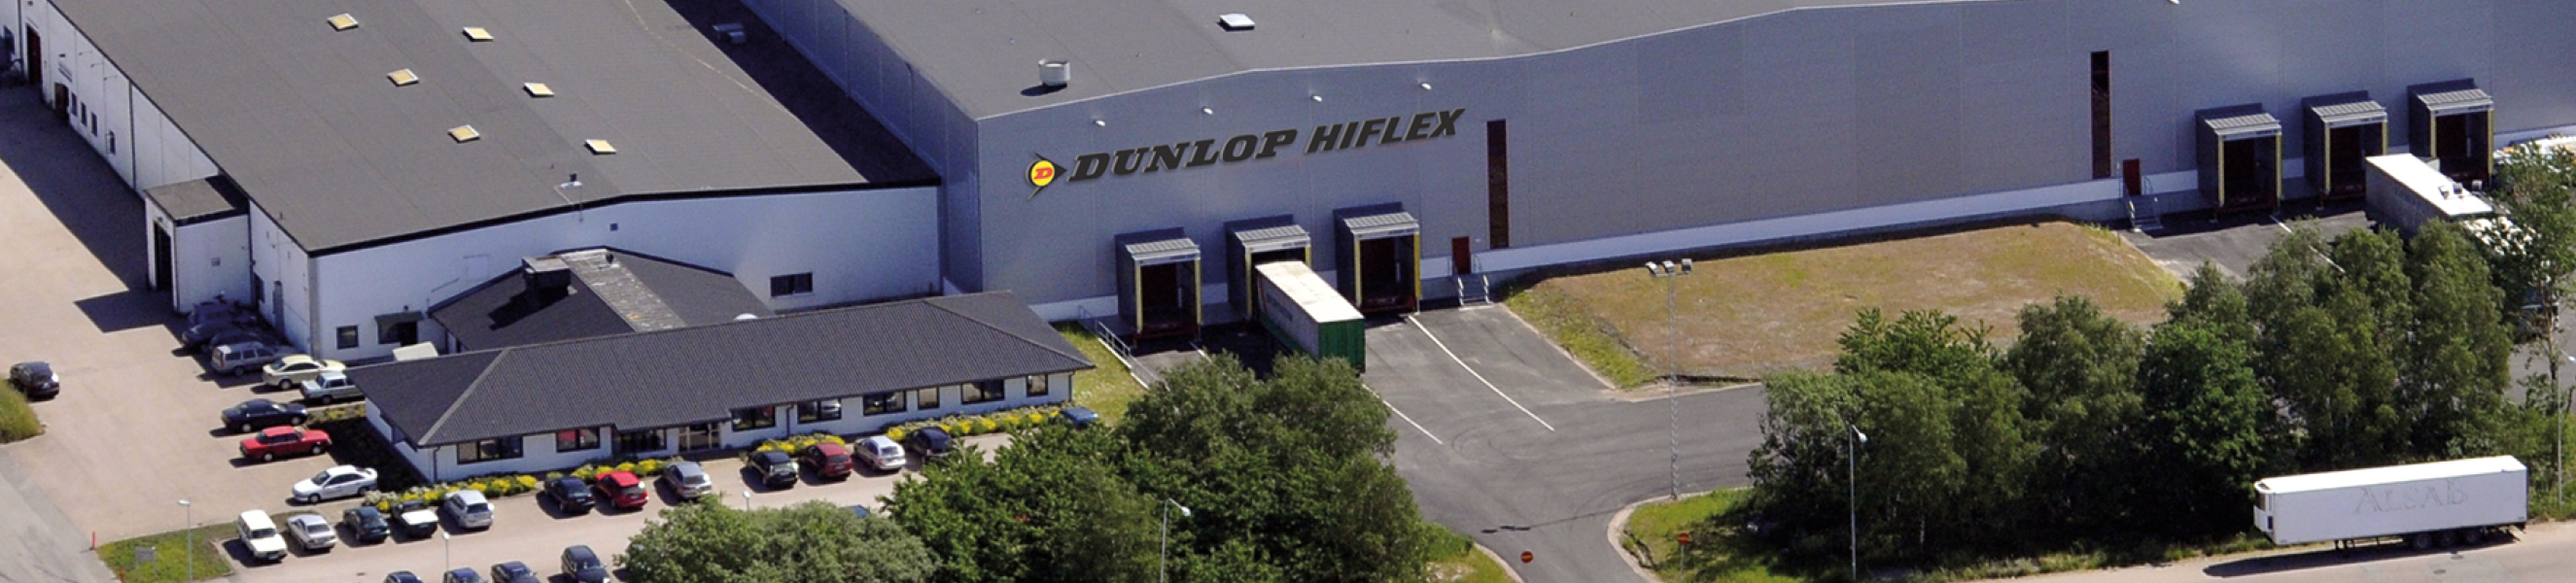 Dunlop Hiflex Scandinavia Dunlop Hiflex Sverige